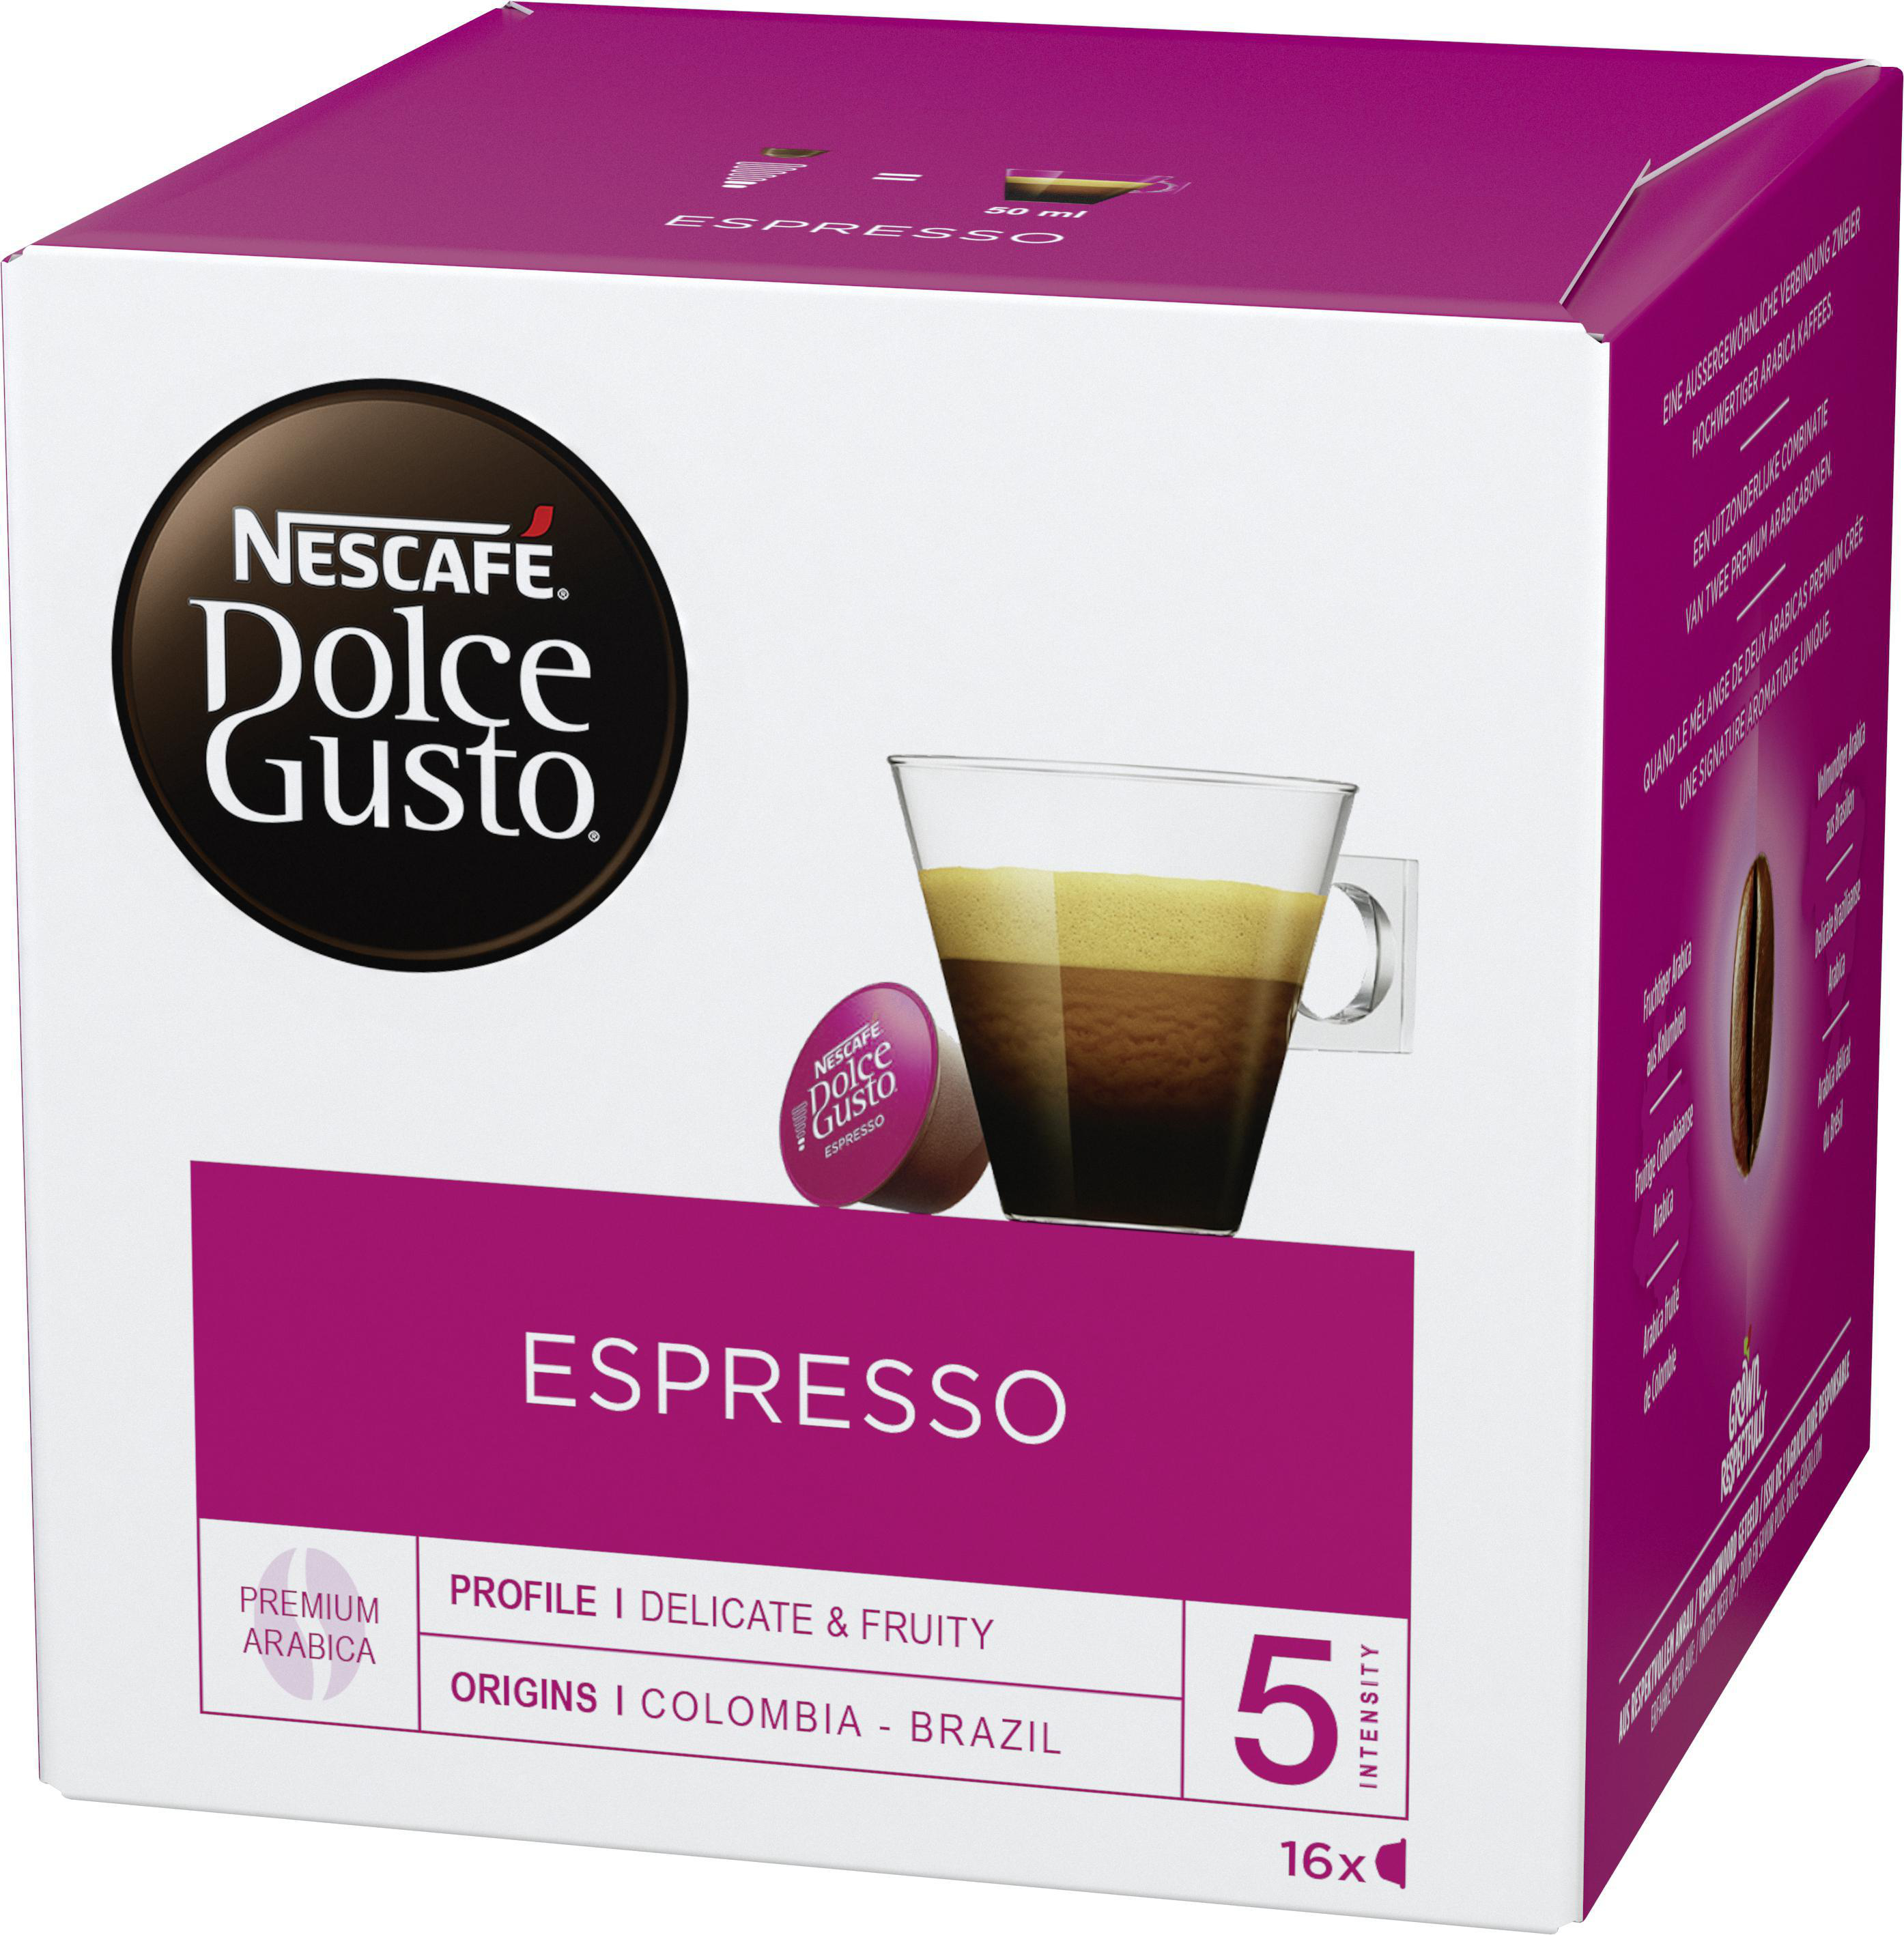 Kaffeekapseln (NESCAFÉ® Gusto®) GUSTO DOLCE Espresso Dolce